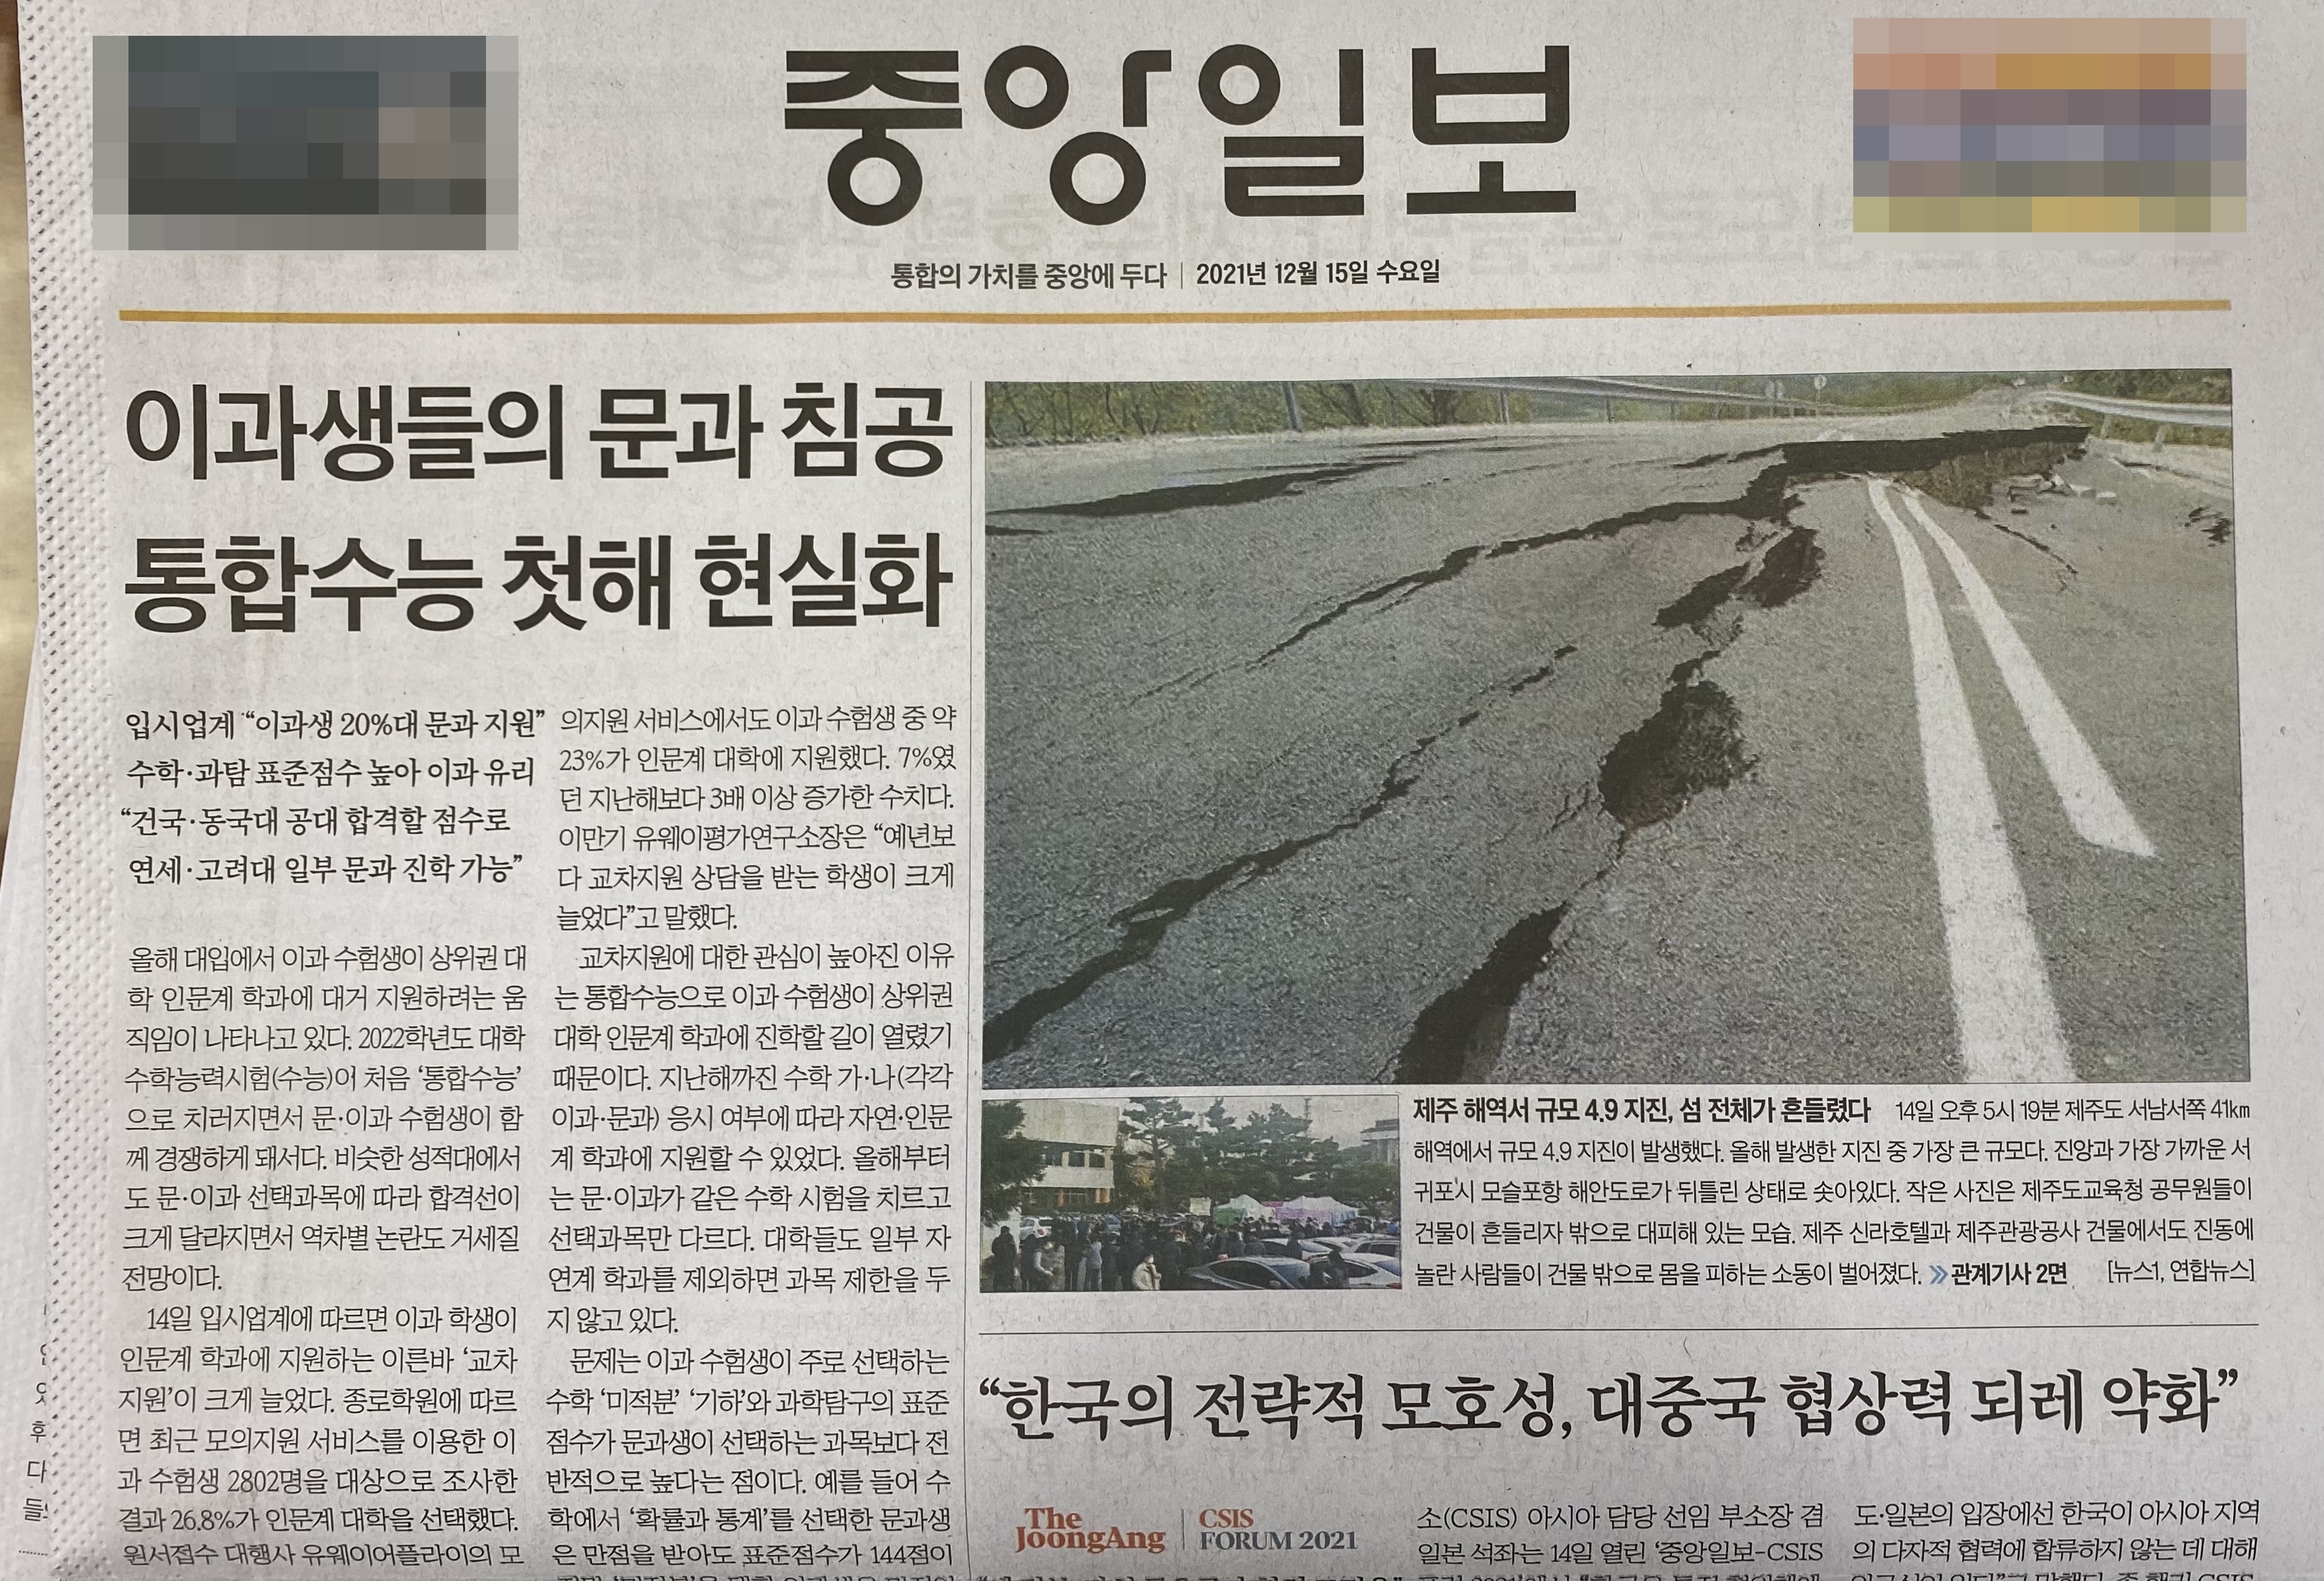 2021년 12월 15일자 중앙일보 일부 지역판 1면에 실린 뉴스1 사진. 제주 지진 피해 모습이라고 잘못 알려졌다.